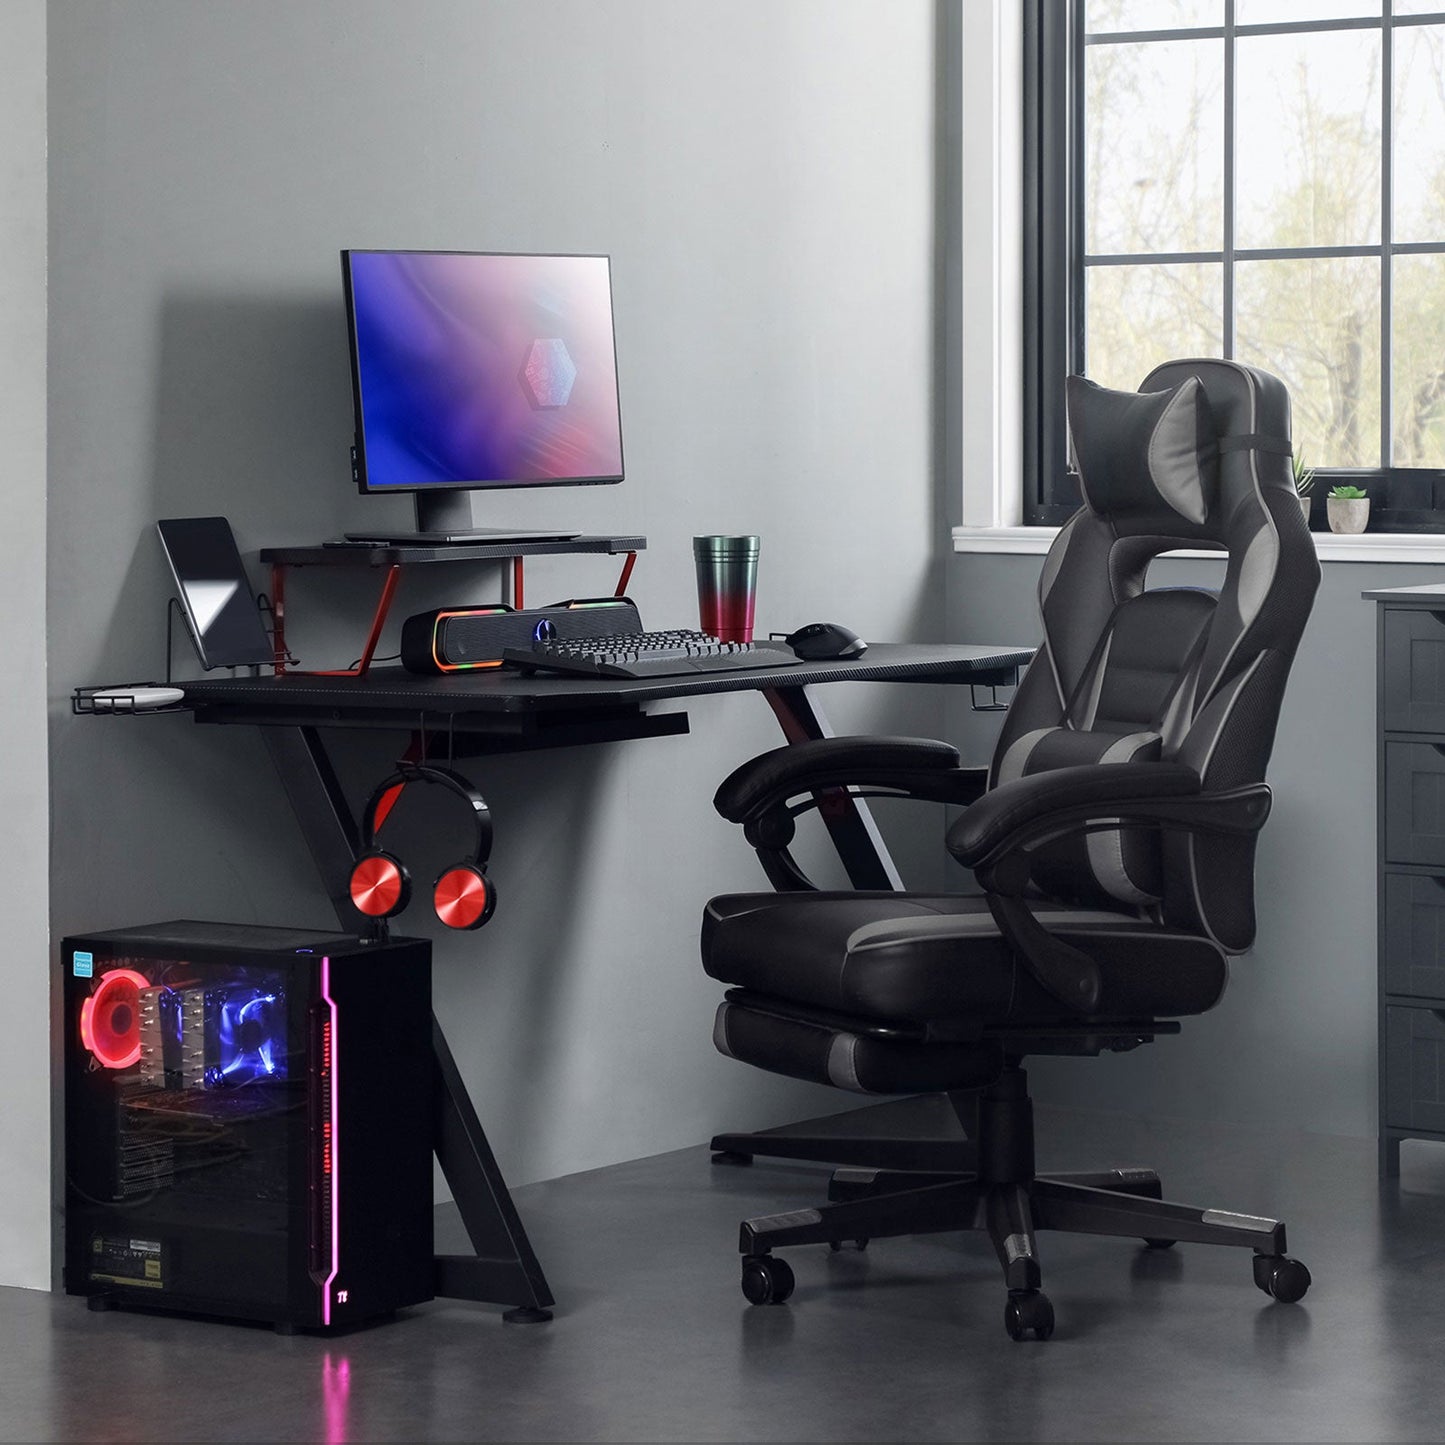 SONGMICS - Silla de juego, silla de oficina, reposacabezas, cojín lumbar, ajustable en altura, 150 kg, silla gamer